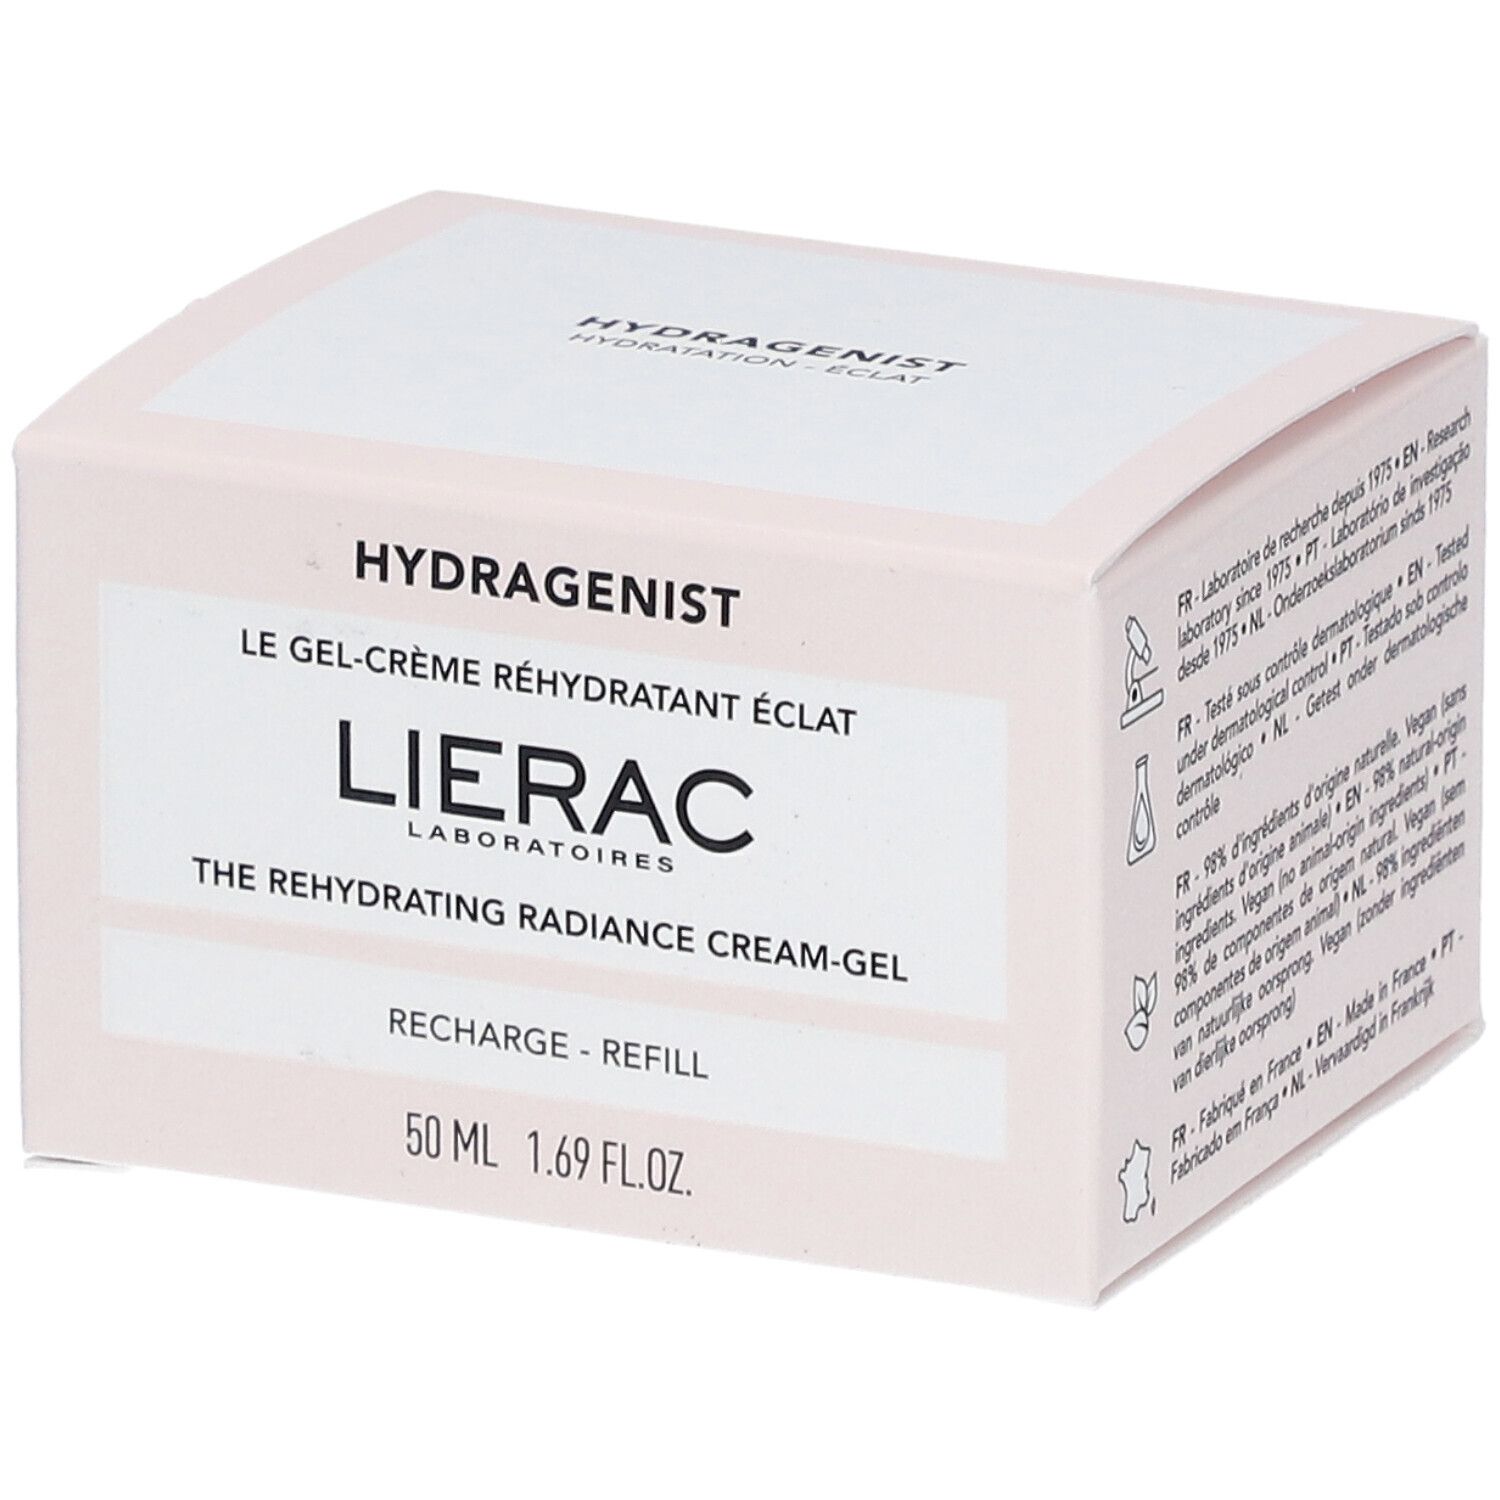 Lierac Hydragenist Le Gel-crème réhydratant éclat recharge